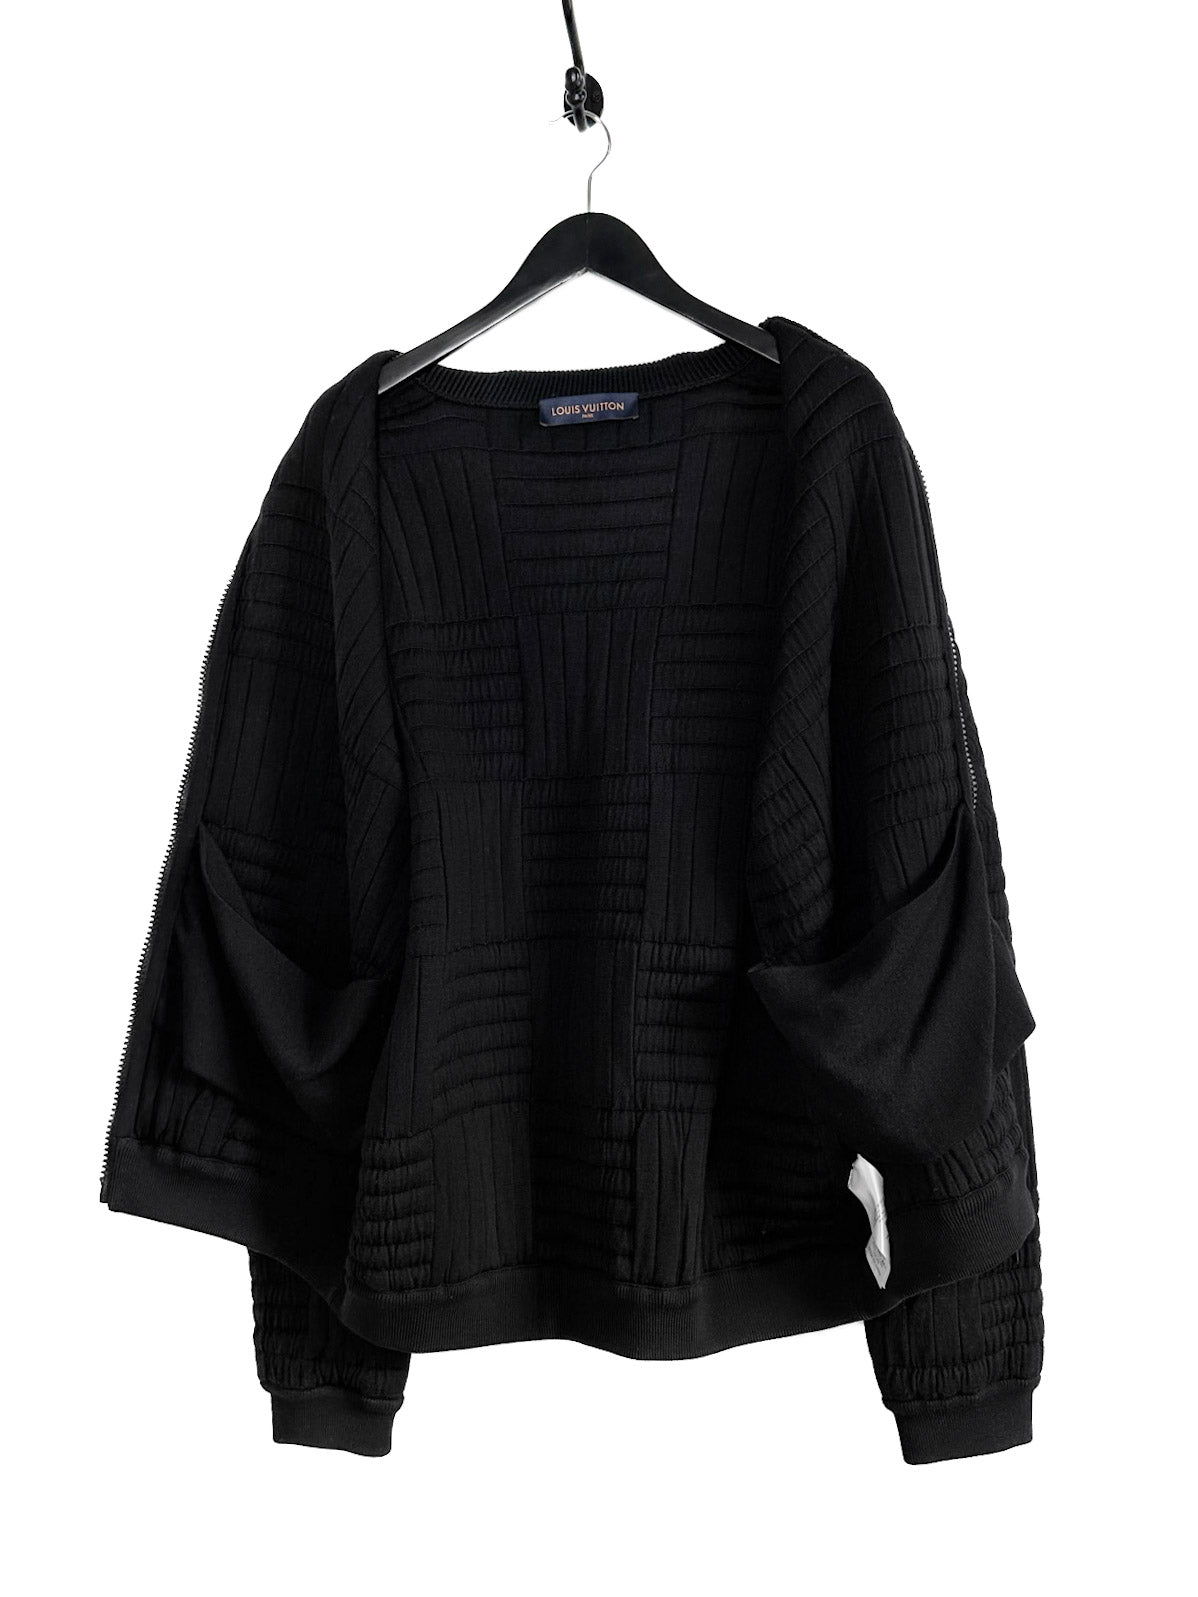 NEW Louis Vuitton pattern damier black Long Pants, Zip Hoodie • Kybershop